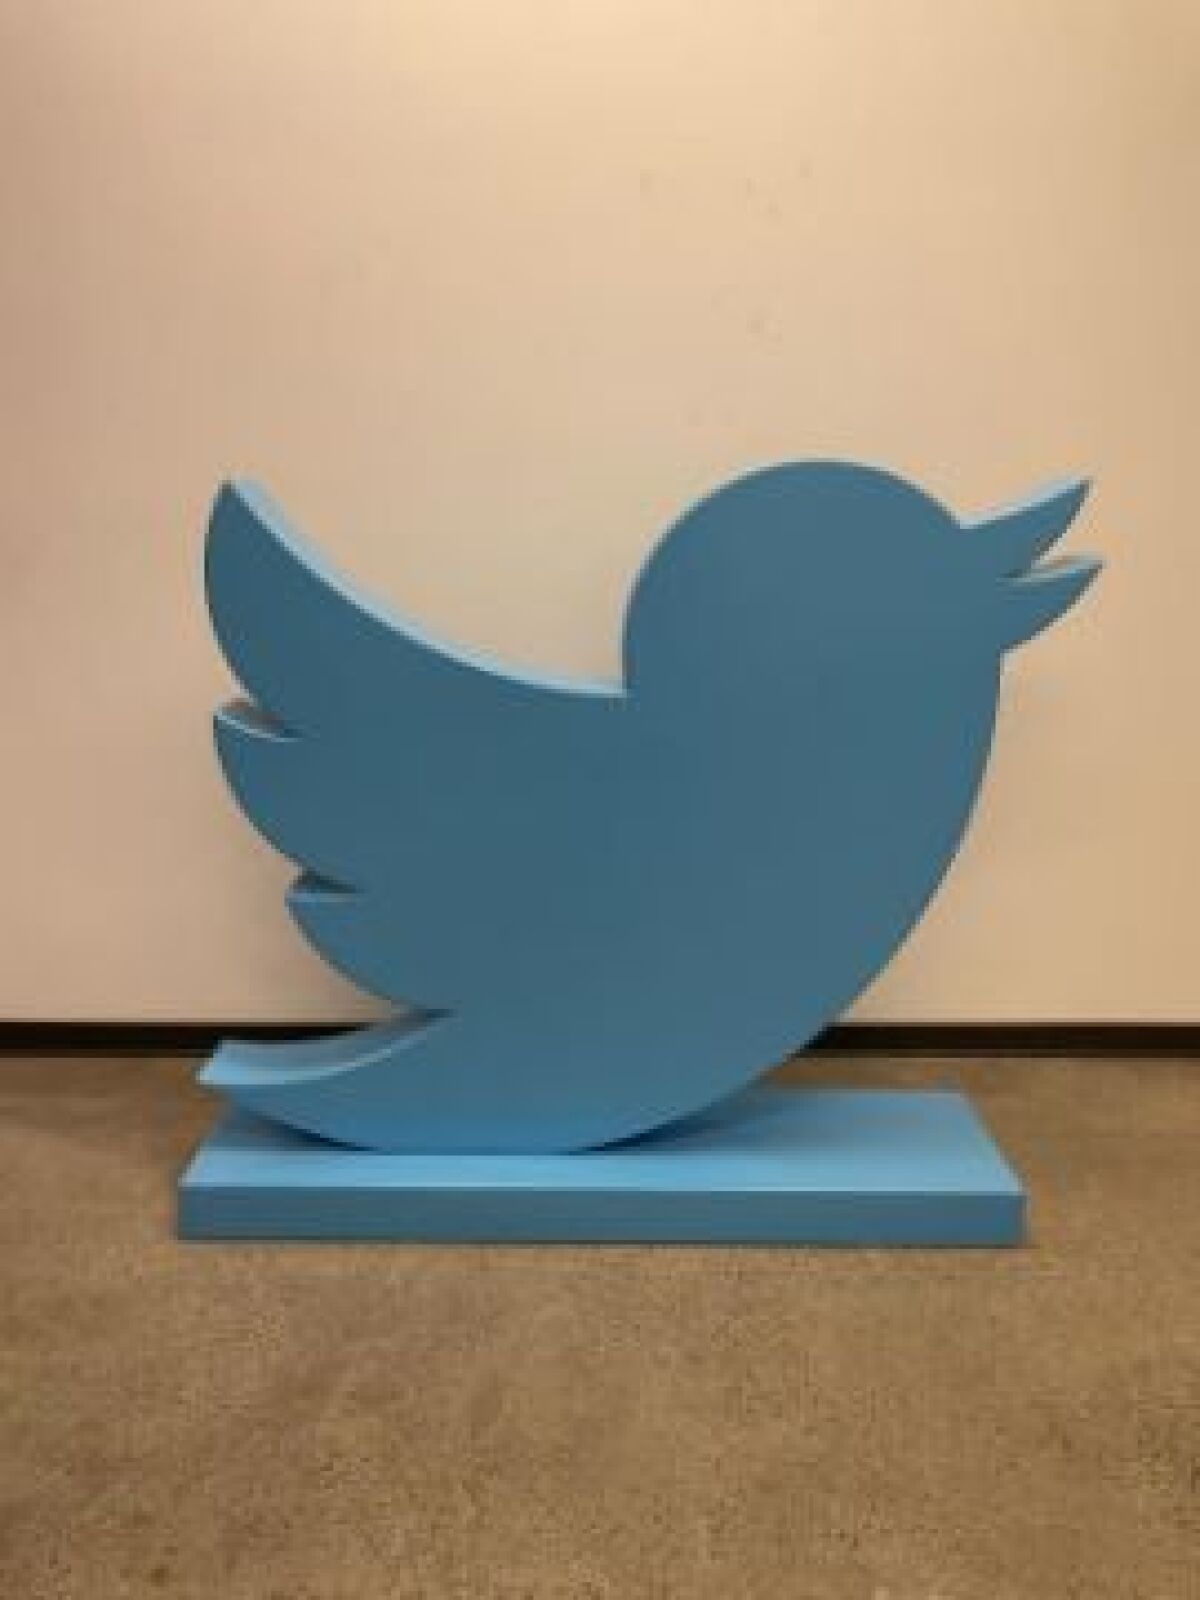 Oiseau Twitter sous la forme d'une statue.